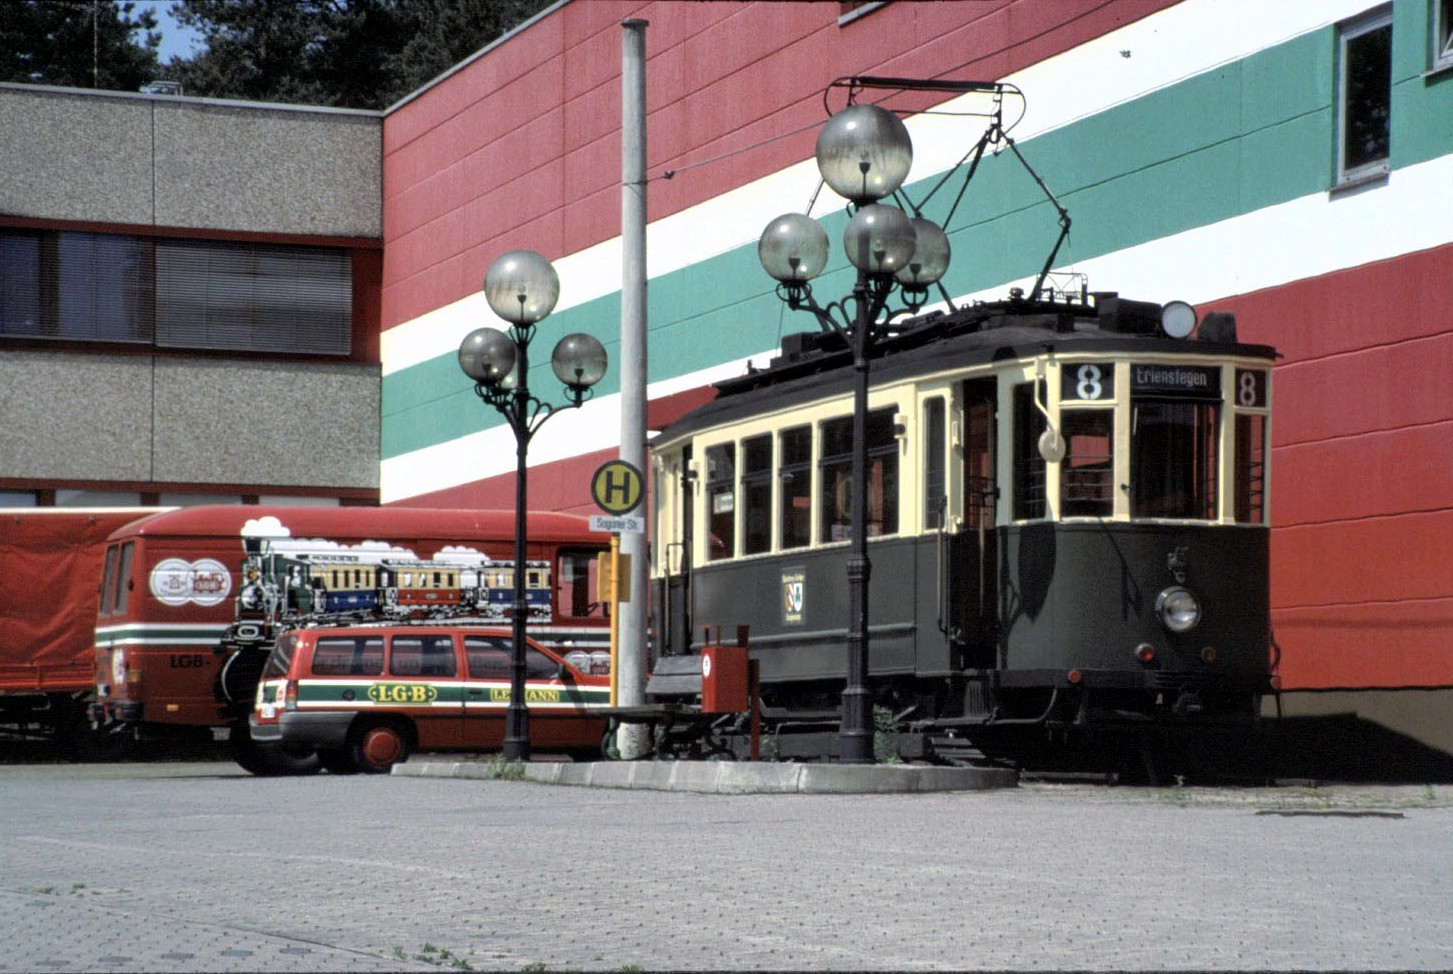 T 2 Straßenbahn in Nürnberg bei der Firma Lehmann Gartenbahn. Bei einem Brand in den 90er Jahren wurde auch die Straßenbahn ein Raub der Flammen. Foto im Mai 1990.